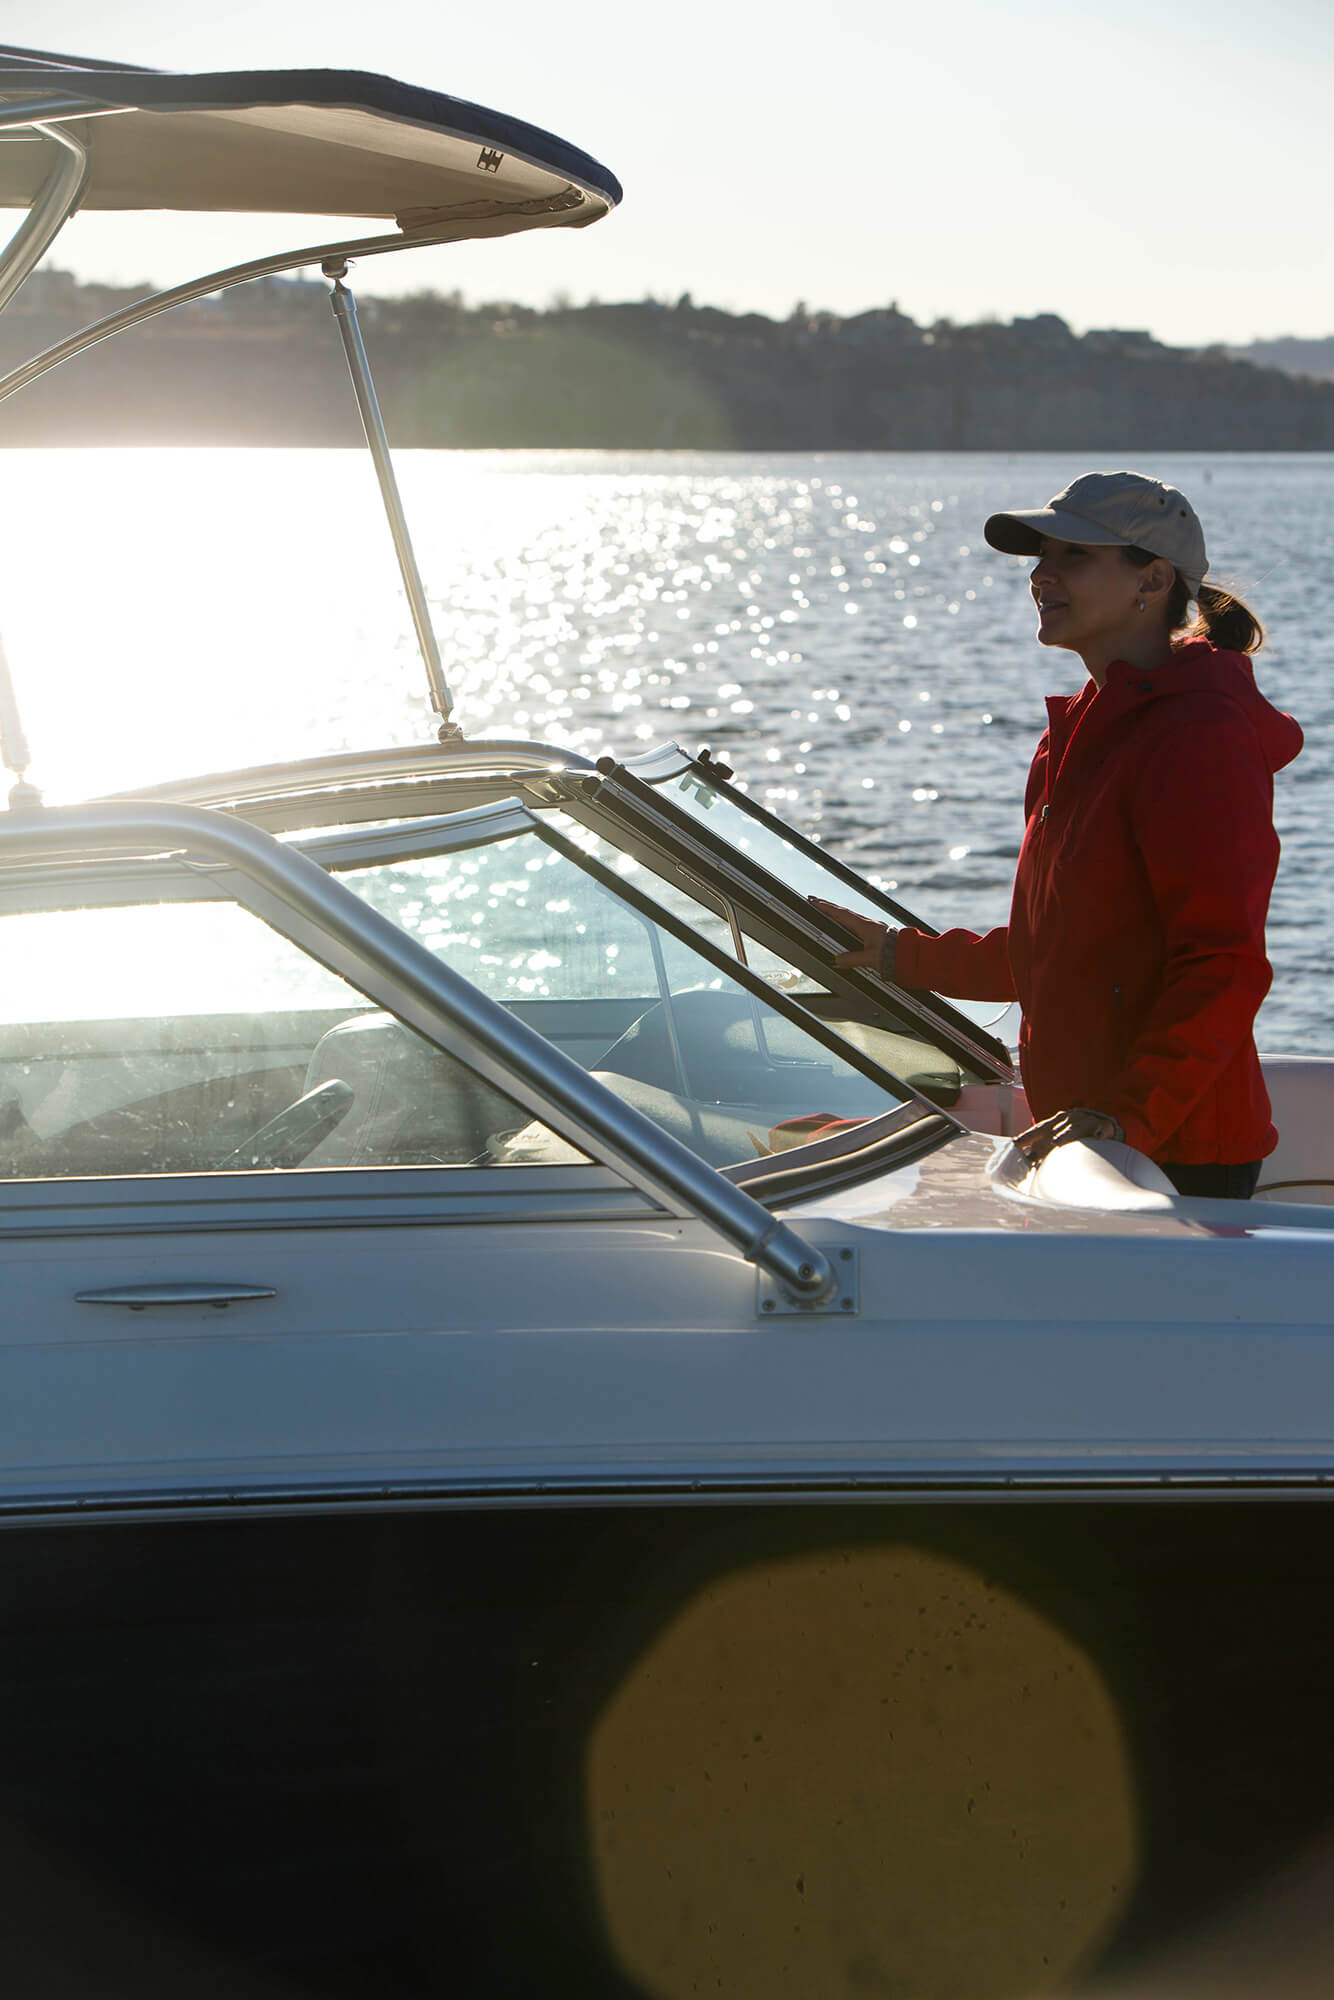 Voorkant van een speedboat met bimini van marineblauwe Sunbrella Supreme-stof met vrouw op boeg